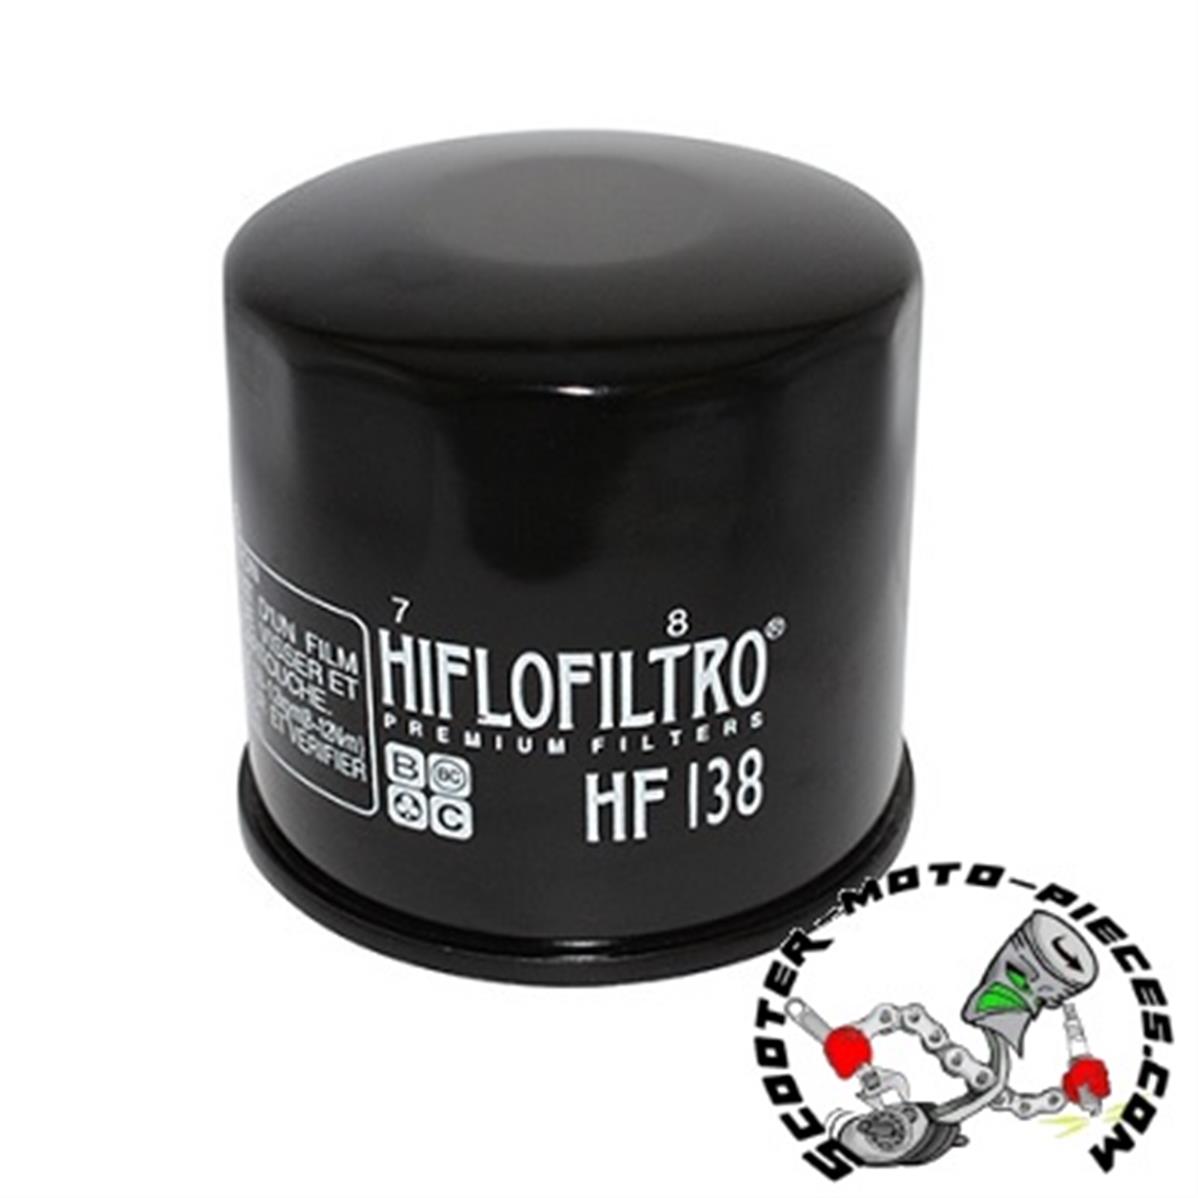 Bimota Hiflo Filtro HF138 Premium Oil Filter fit Arctic Cat 400 4x4 ACT 04 